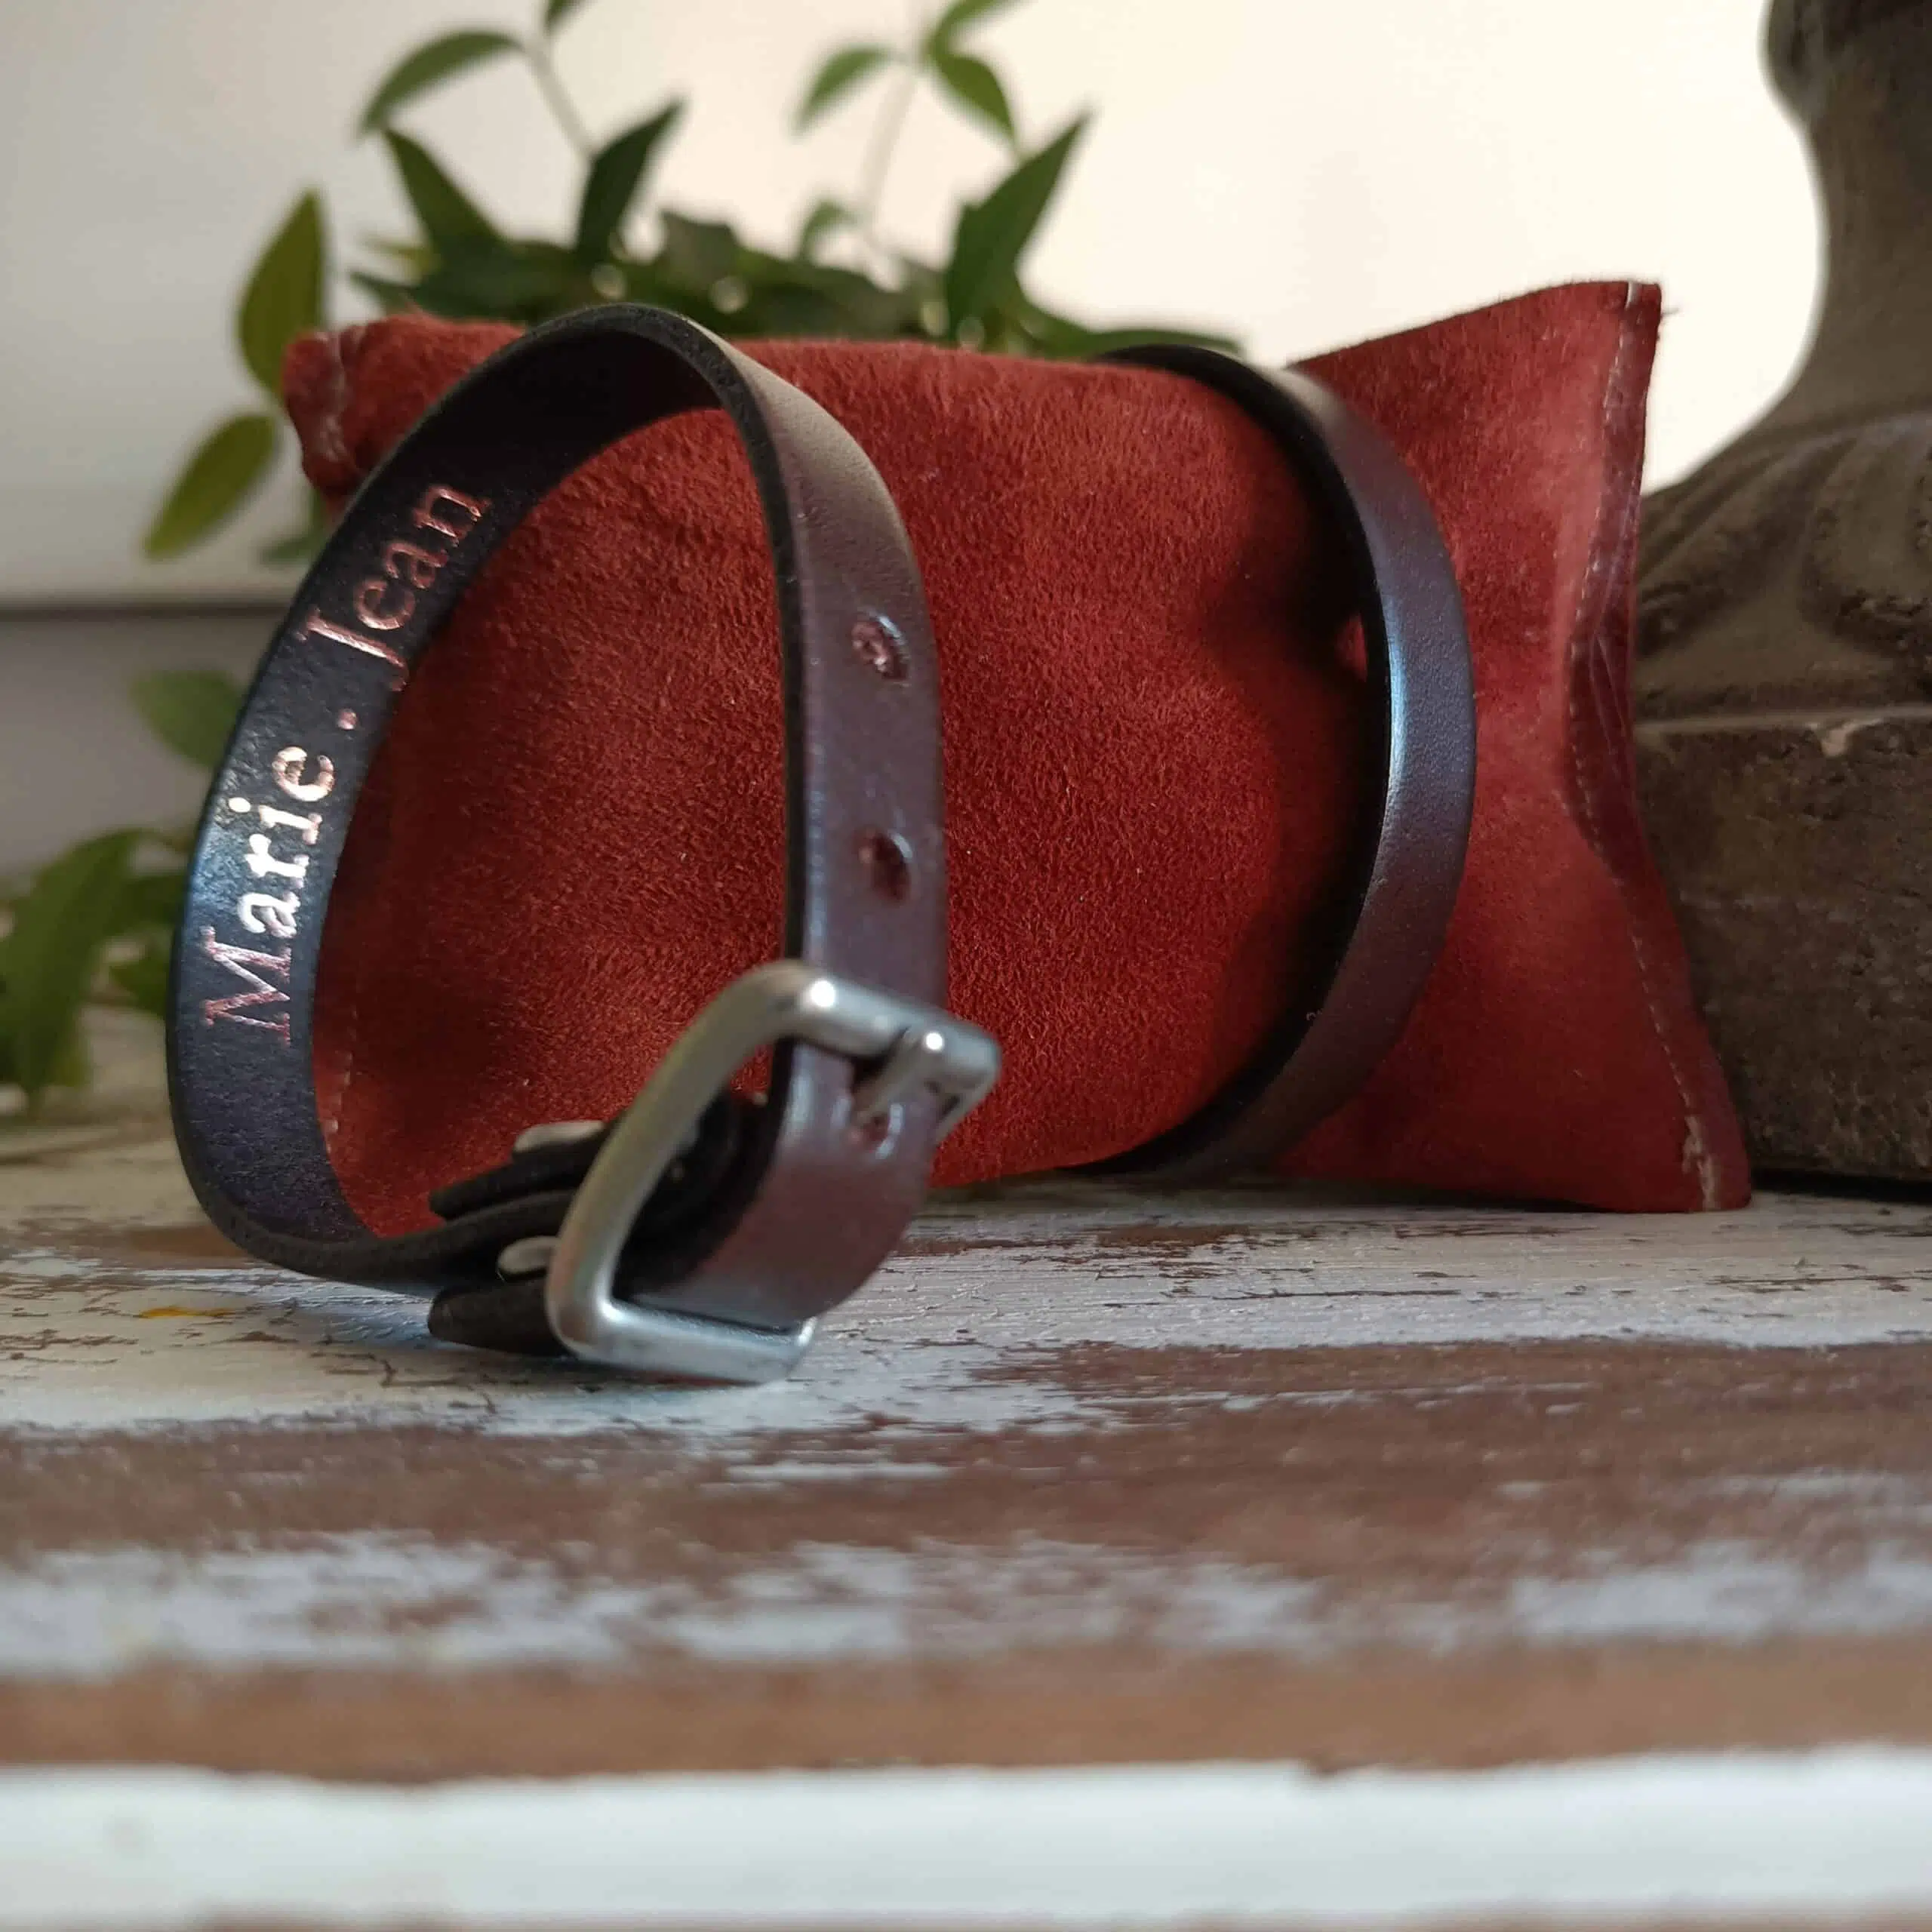 Une lanière de cuir pour la confection de ceintures et de bracelets